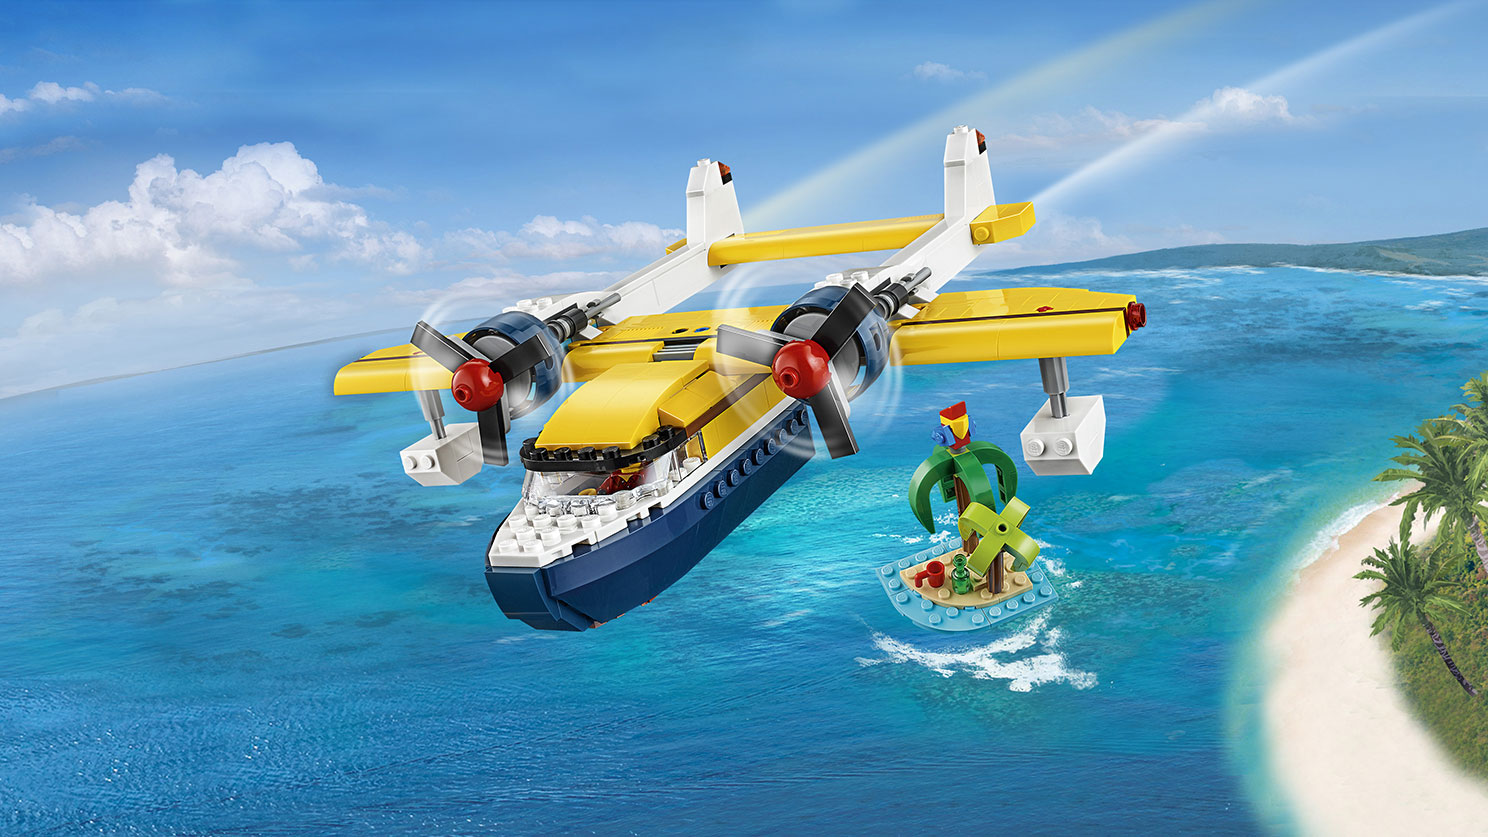 Lego Creator. Приключения на островах  